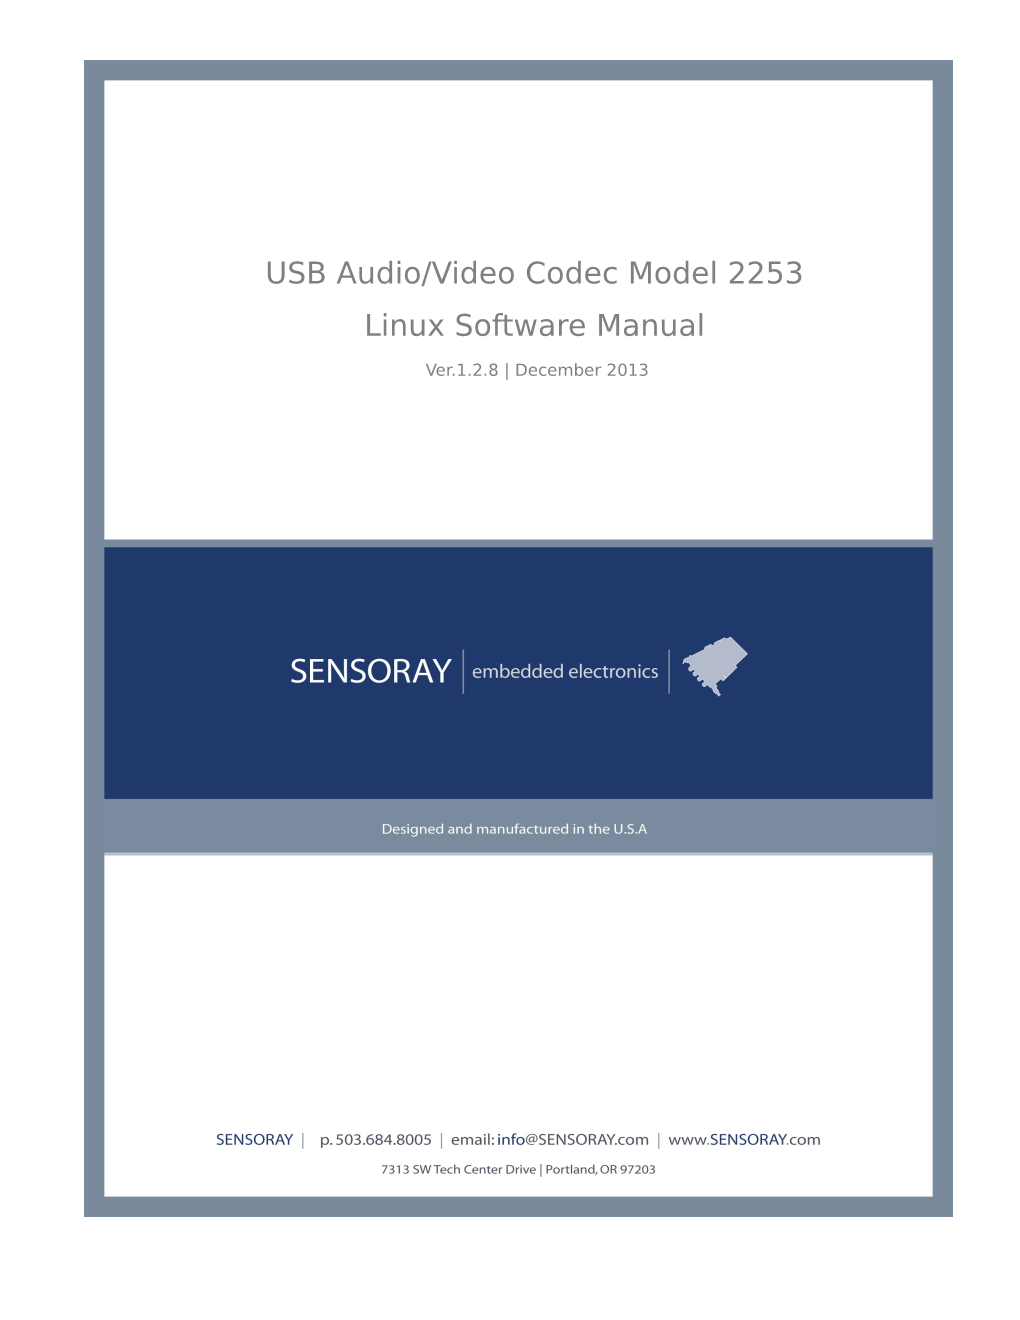 USB Audio/Video Codec Model 2253 Linux Software Manual